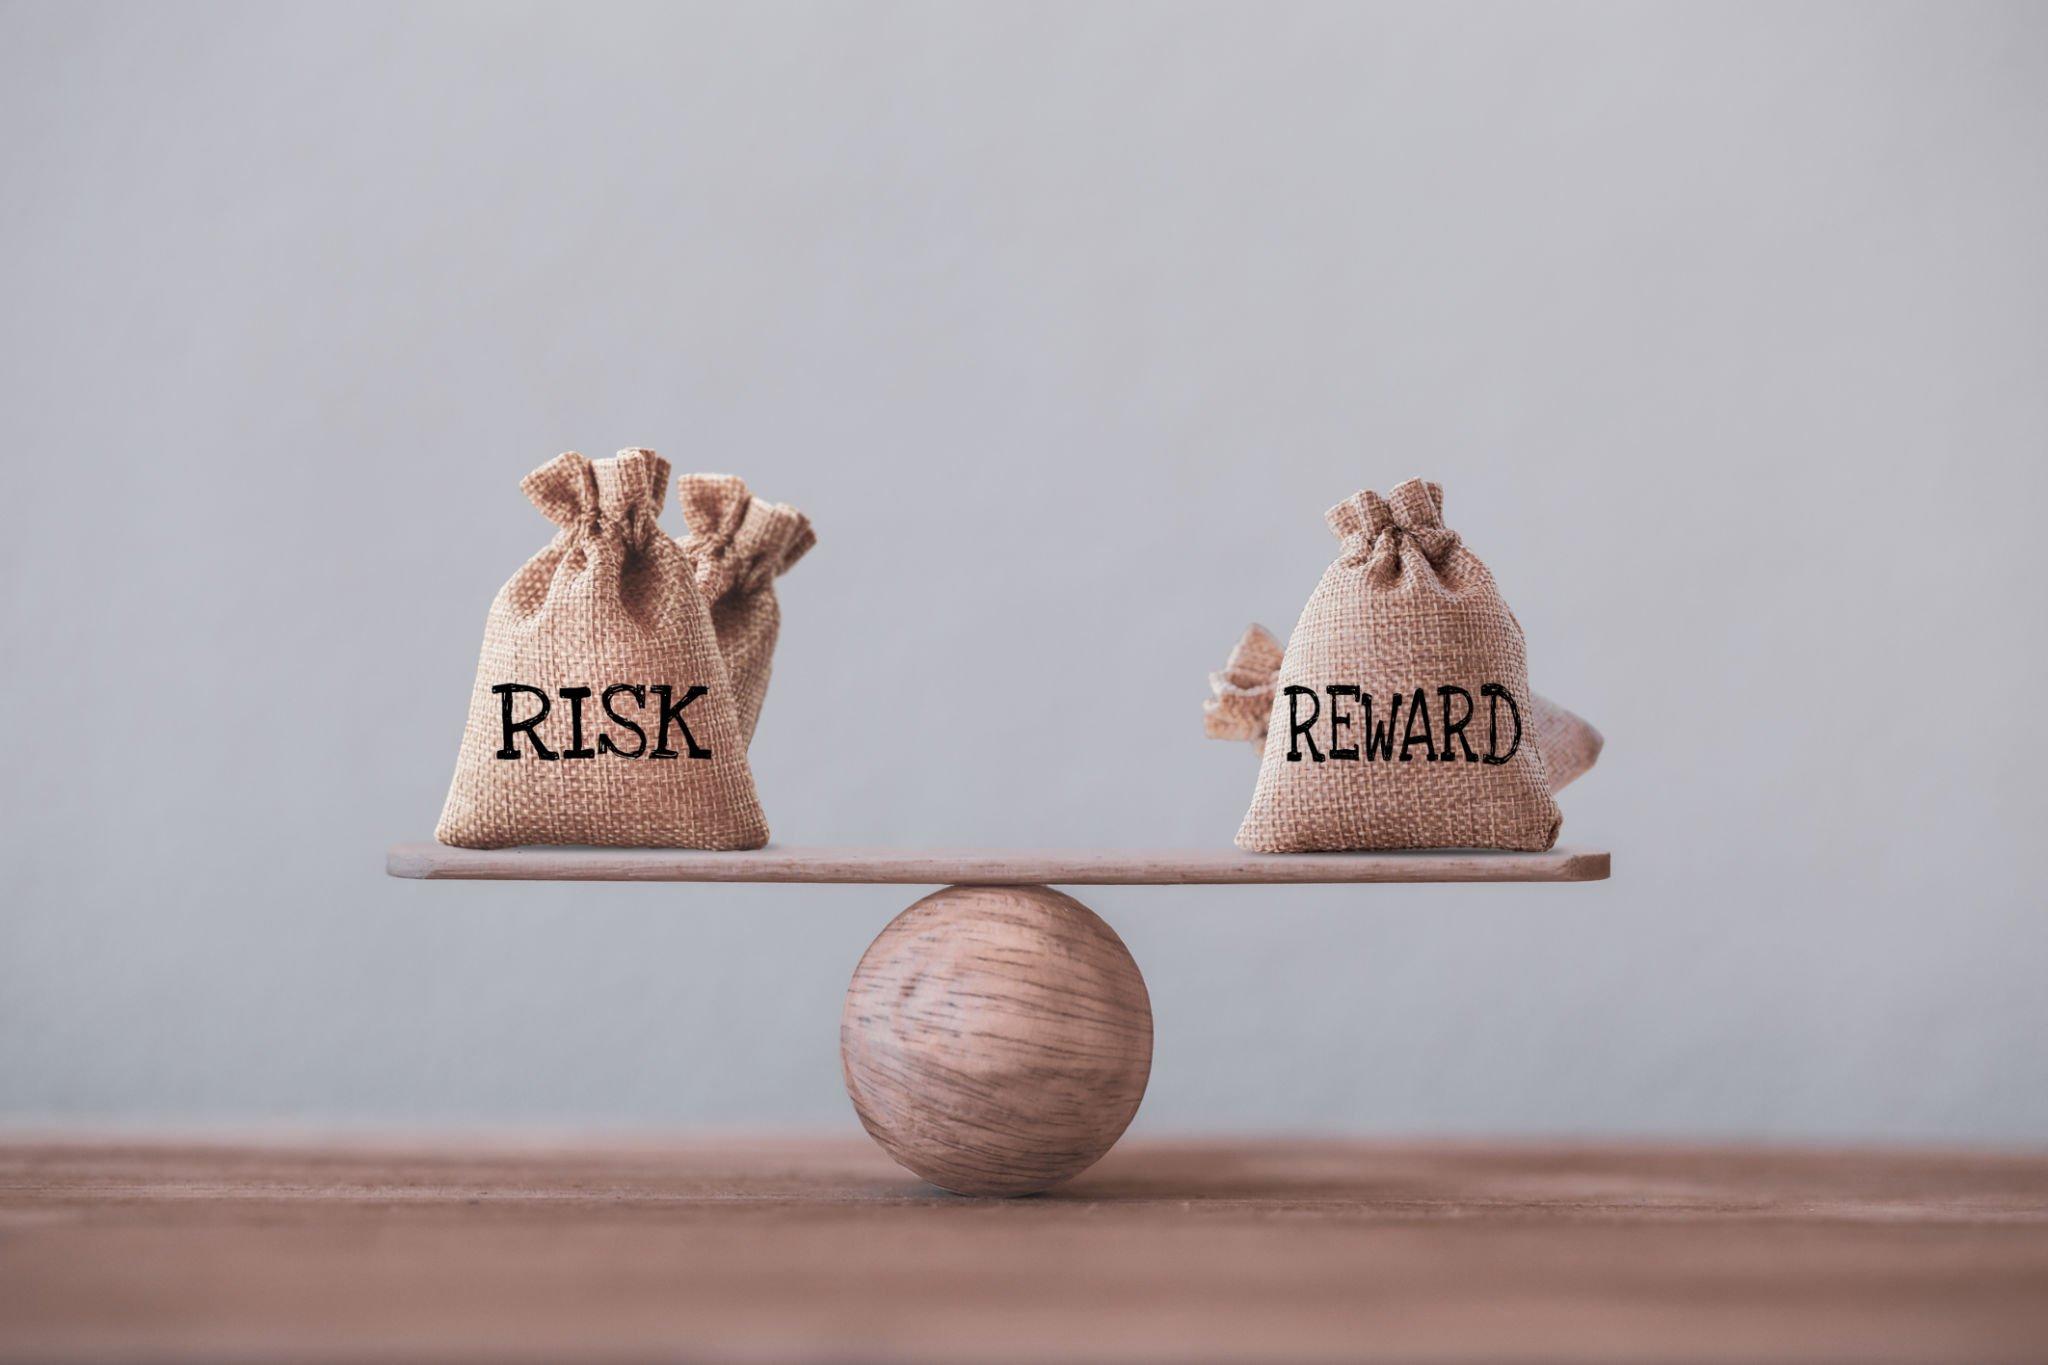 understanding risk